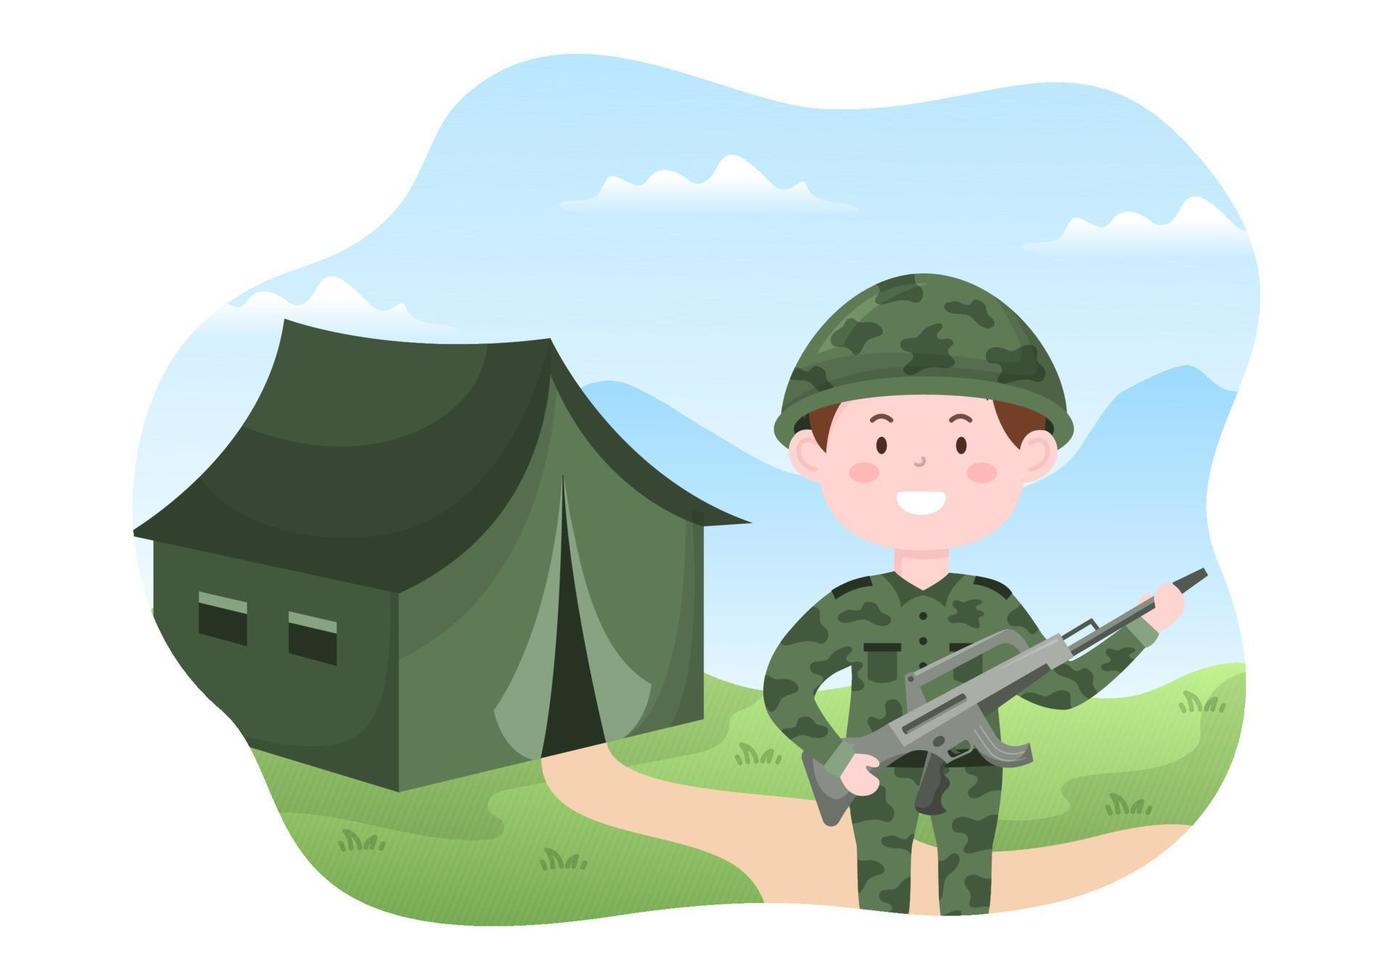 plantilla de fuerza del ejército militar dibujada a mano ilustración plana de dibujos animados lindo con soldado, arma, tanque o equipo pesado de protección vector